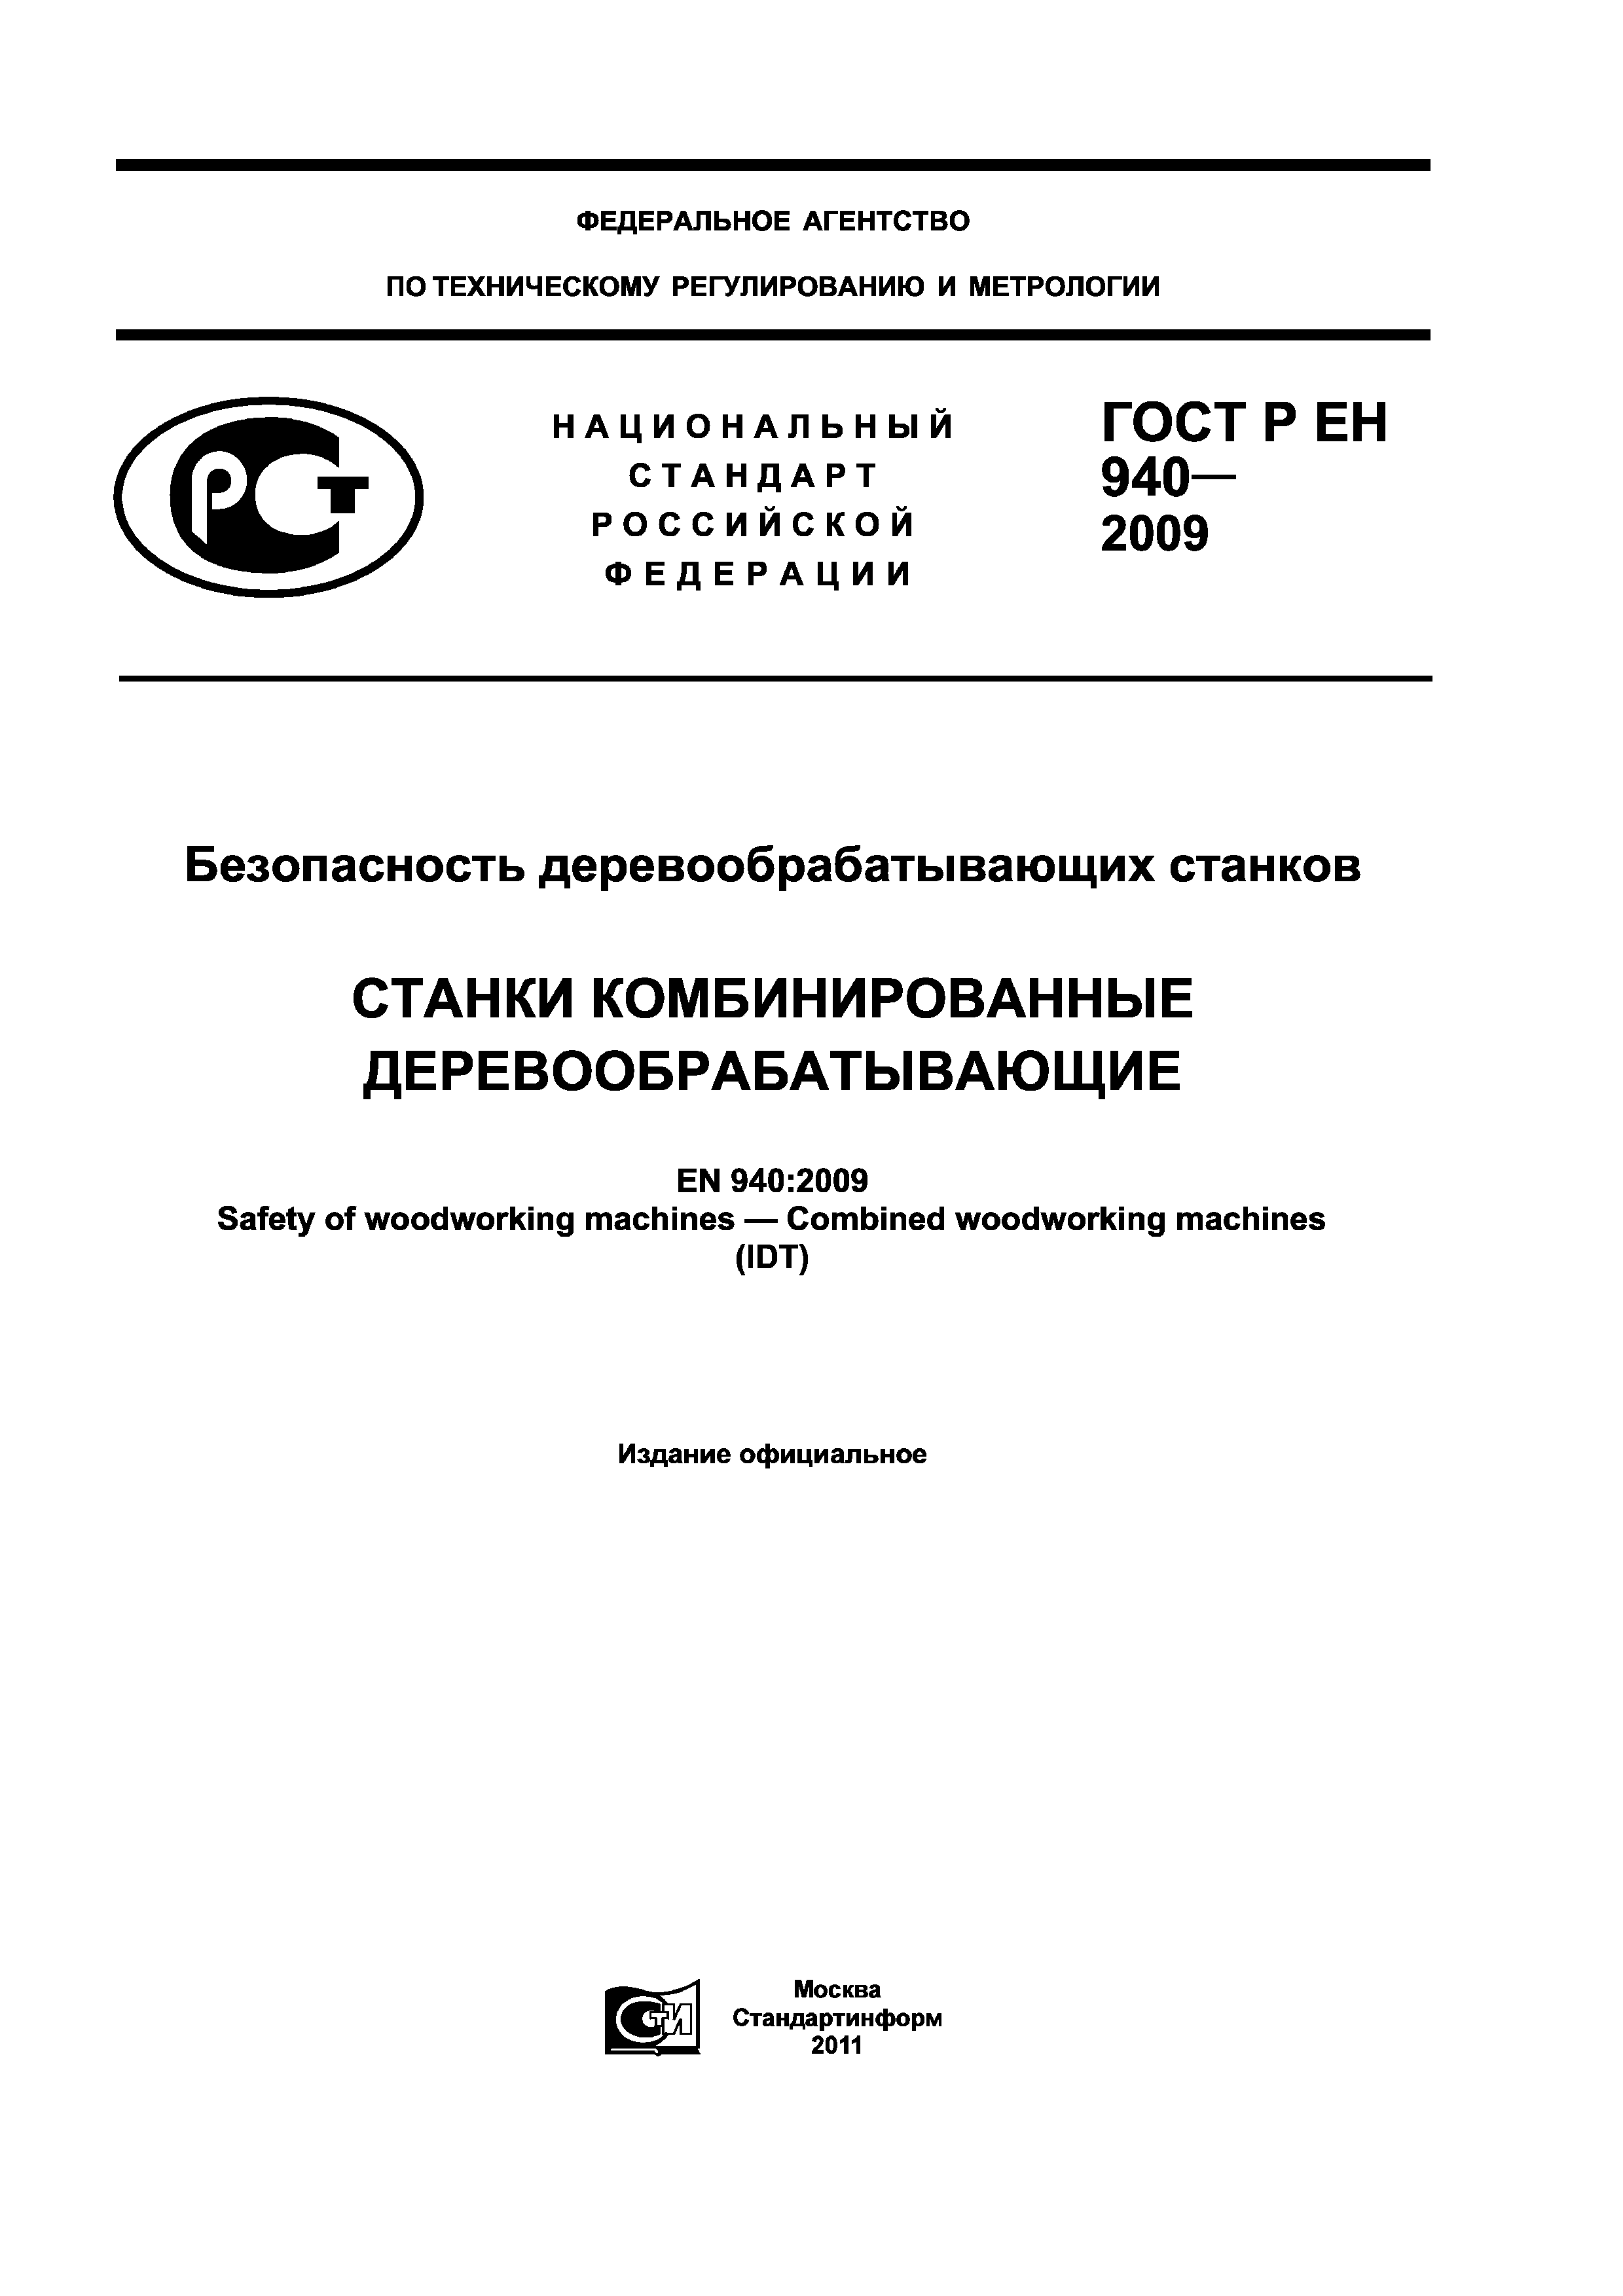 ГОСТ Р ЕН 940-2009